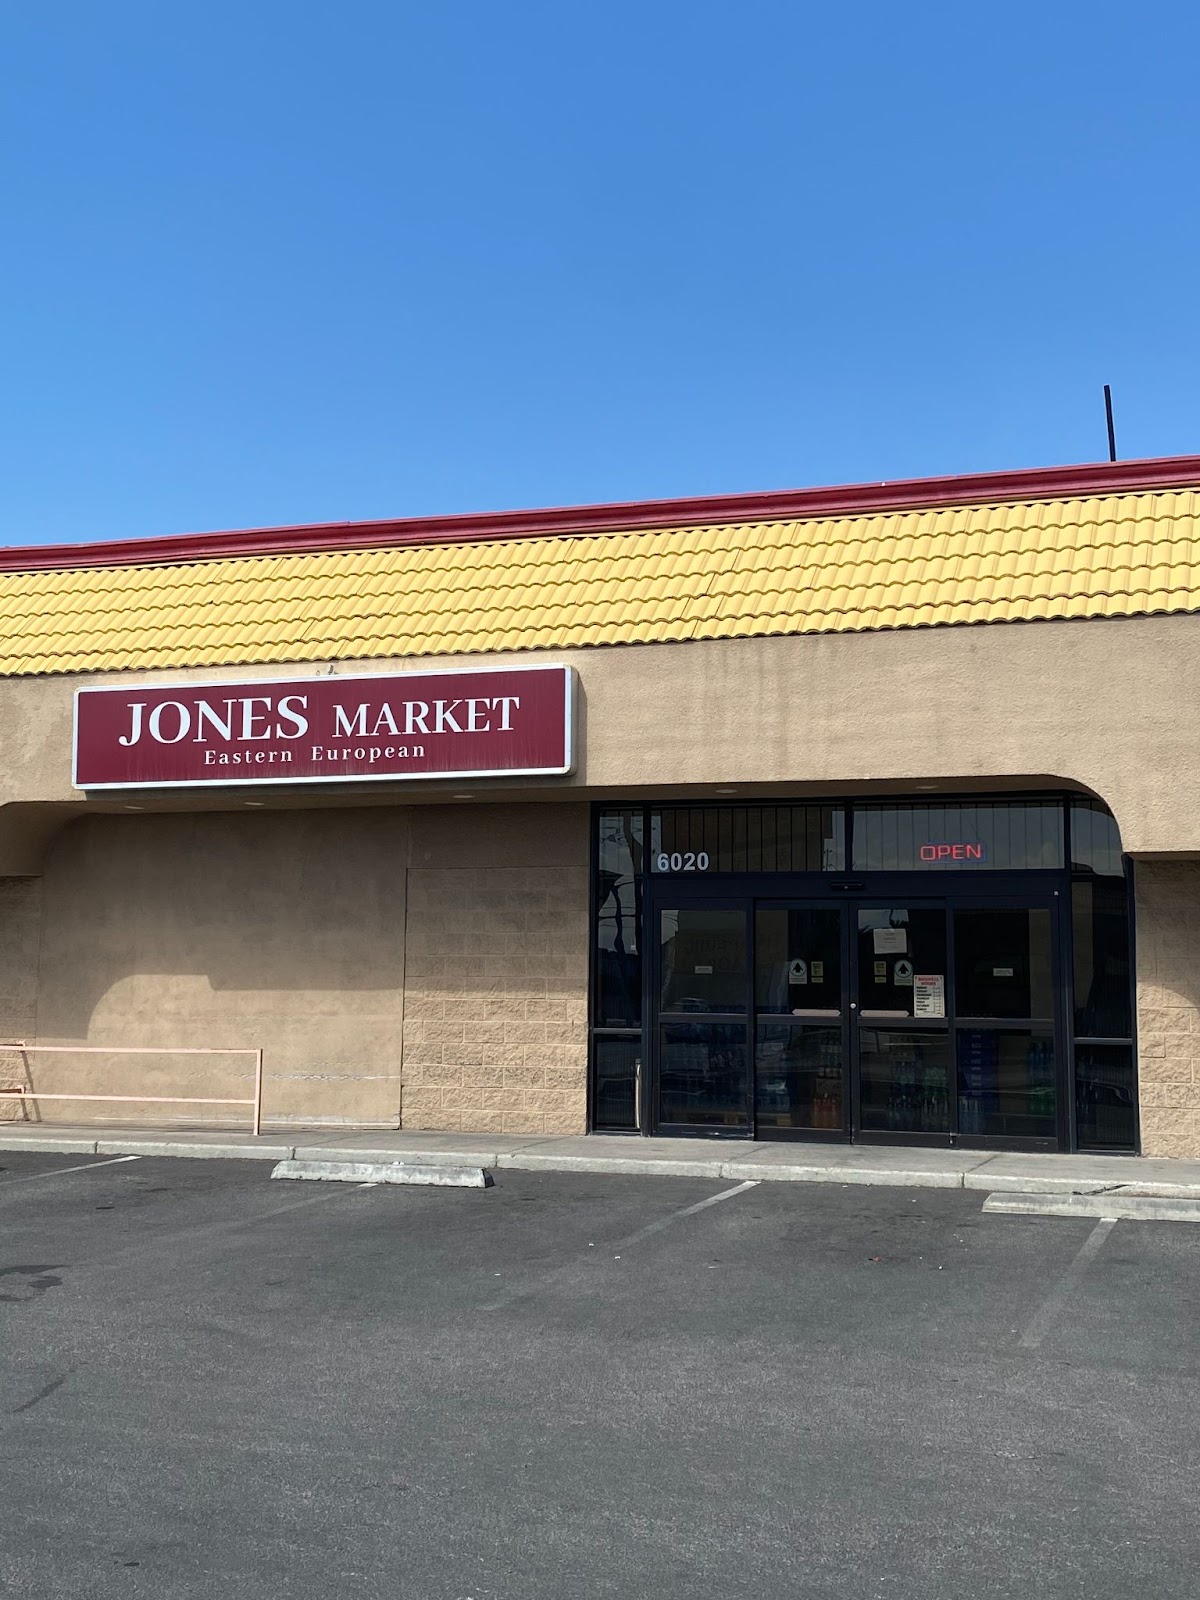 Jones Market international grocery store in las vegas, nv